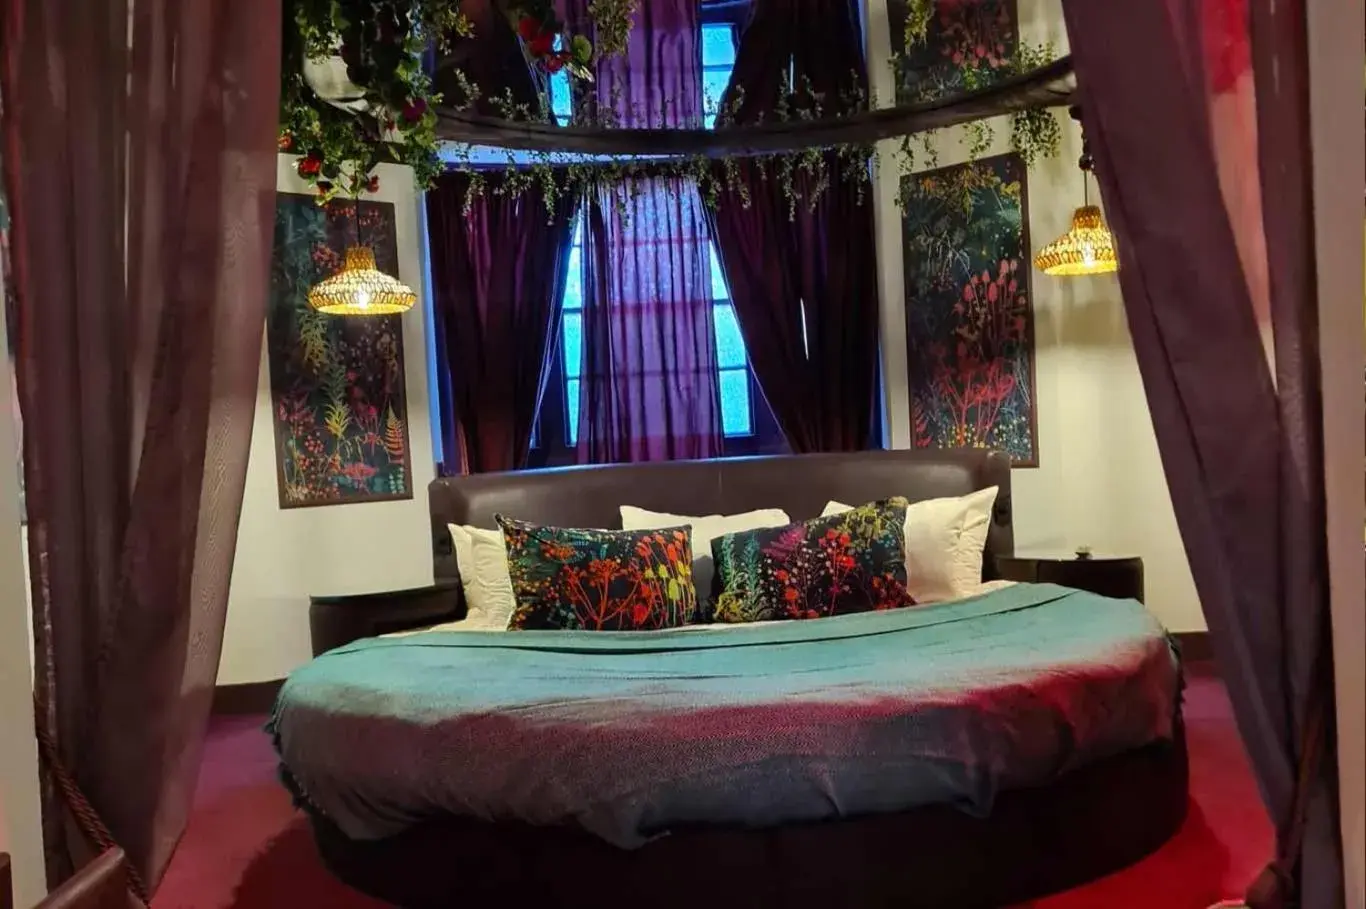 Bed in Hotel Pelirocco